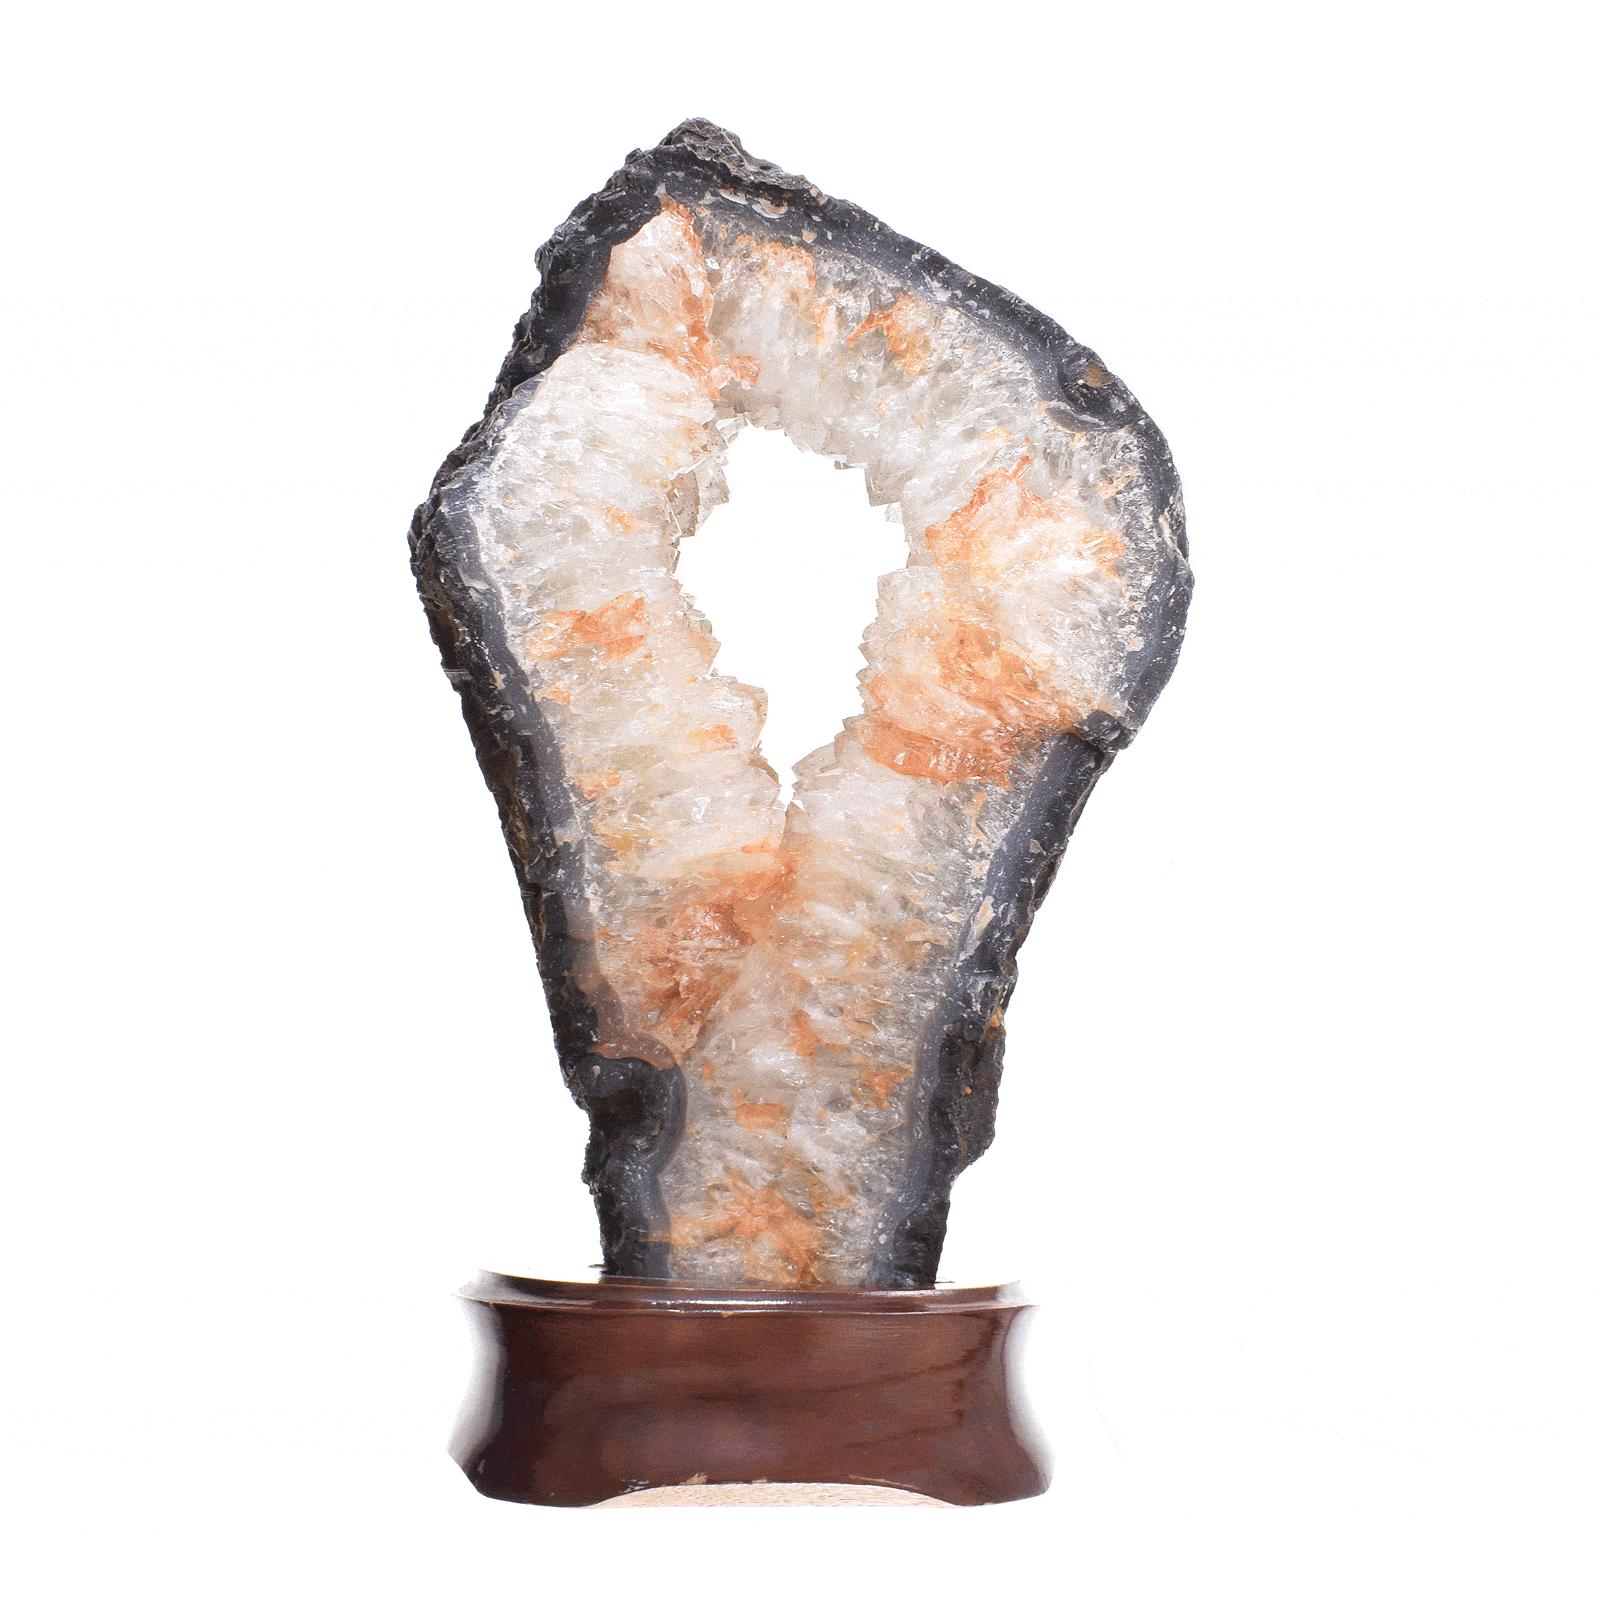 Φέτα φυσικής πέτρας αχάτη με κρύσταλλα χαλαζία, γυαλισμένη στη μια όψη. Ο Αχάτης είναι ενσωματωμένος σε ξύλινη βάση και το προϊόν έχει ύψος 29cm. Αγοράστε online shop.